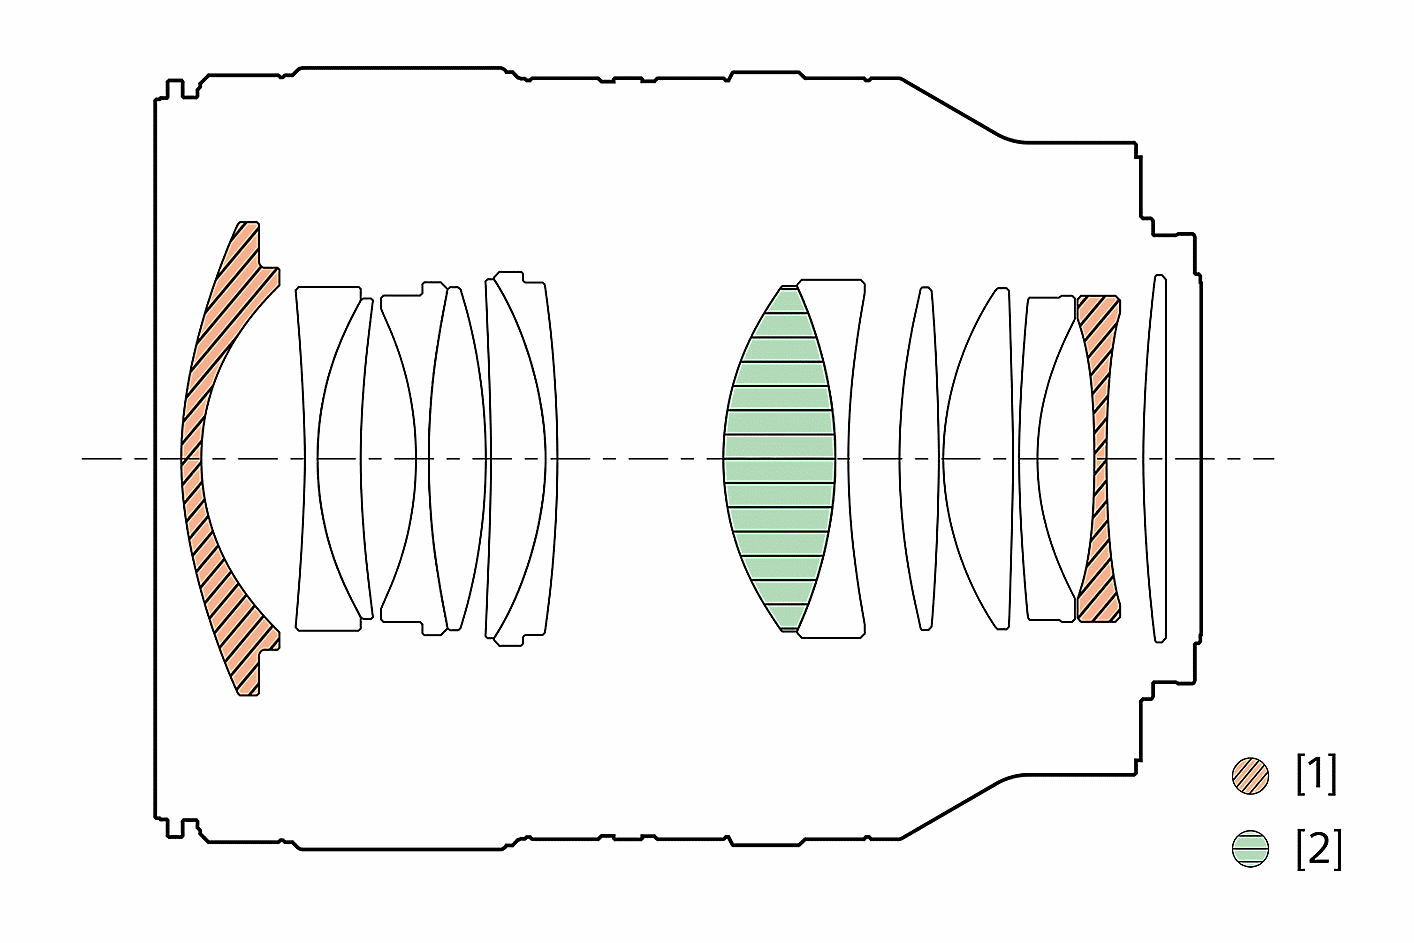 Ilustracija konfiguracije objektiva